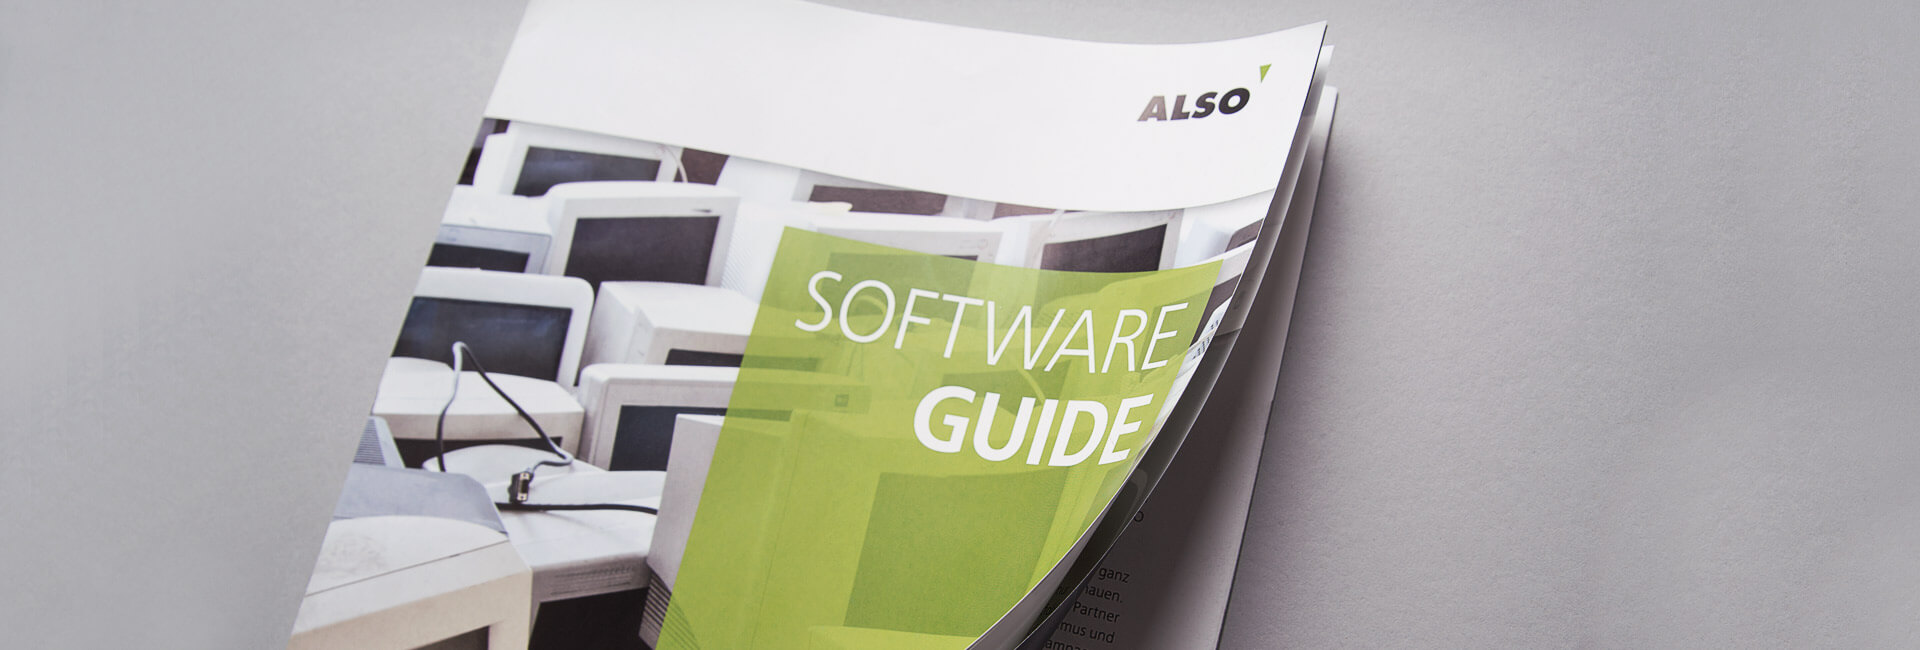 ALSO Deutschland Software Guide Magazin Fachhandel KOMMUNIKATION LOHNZICH